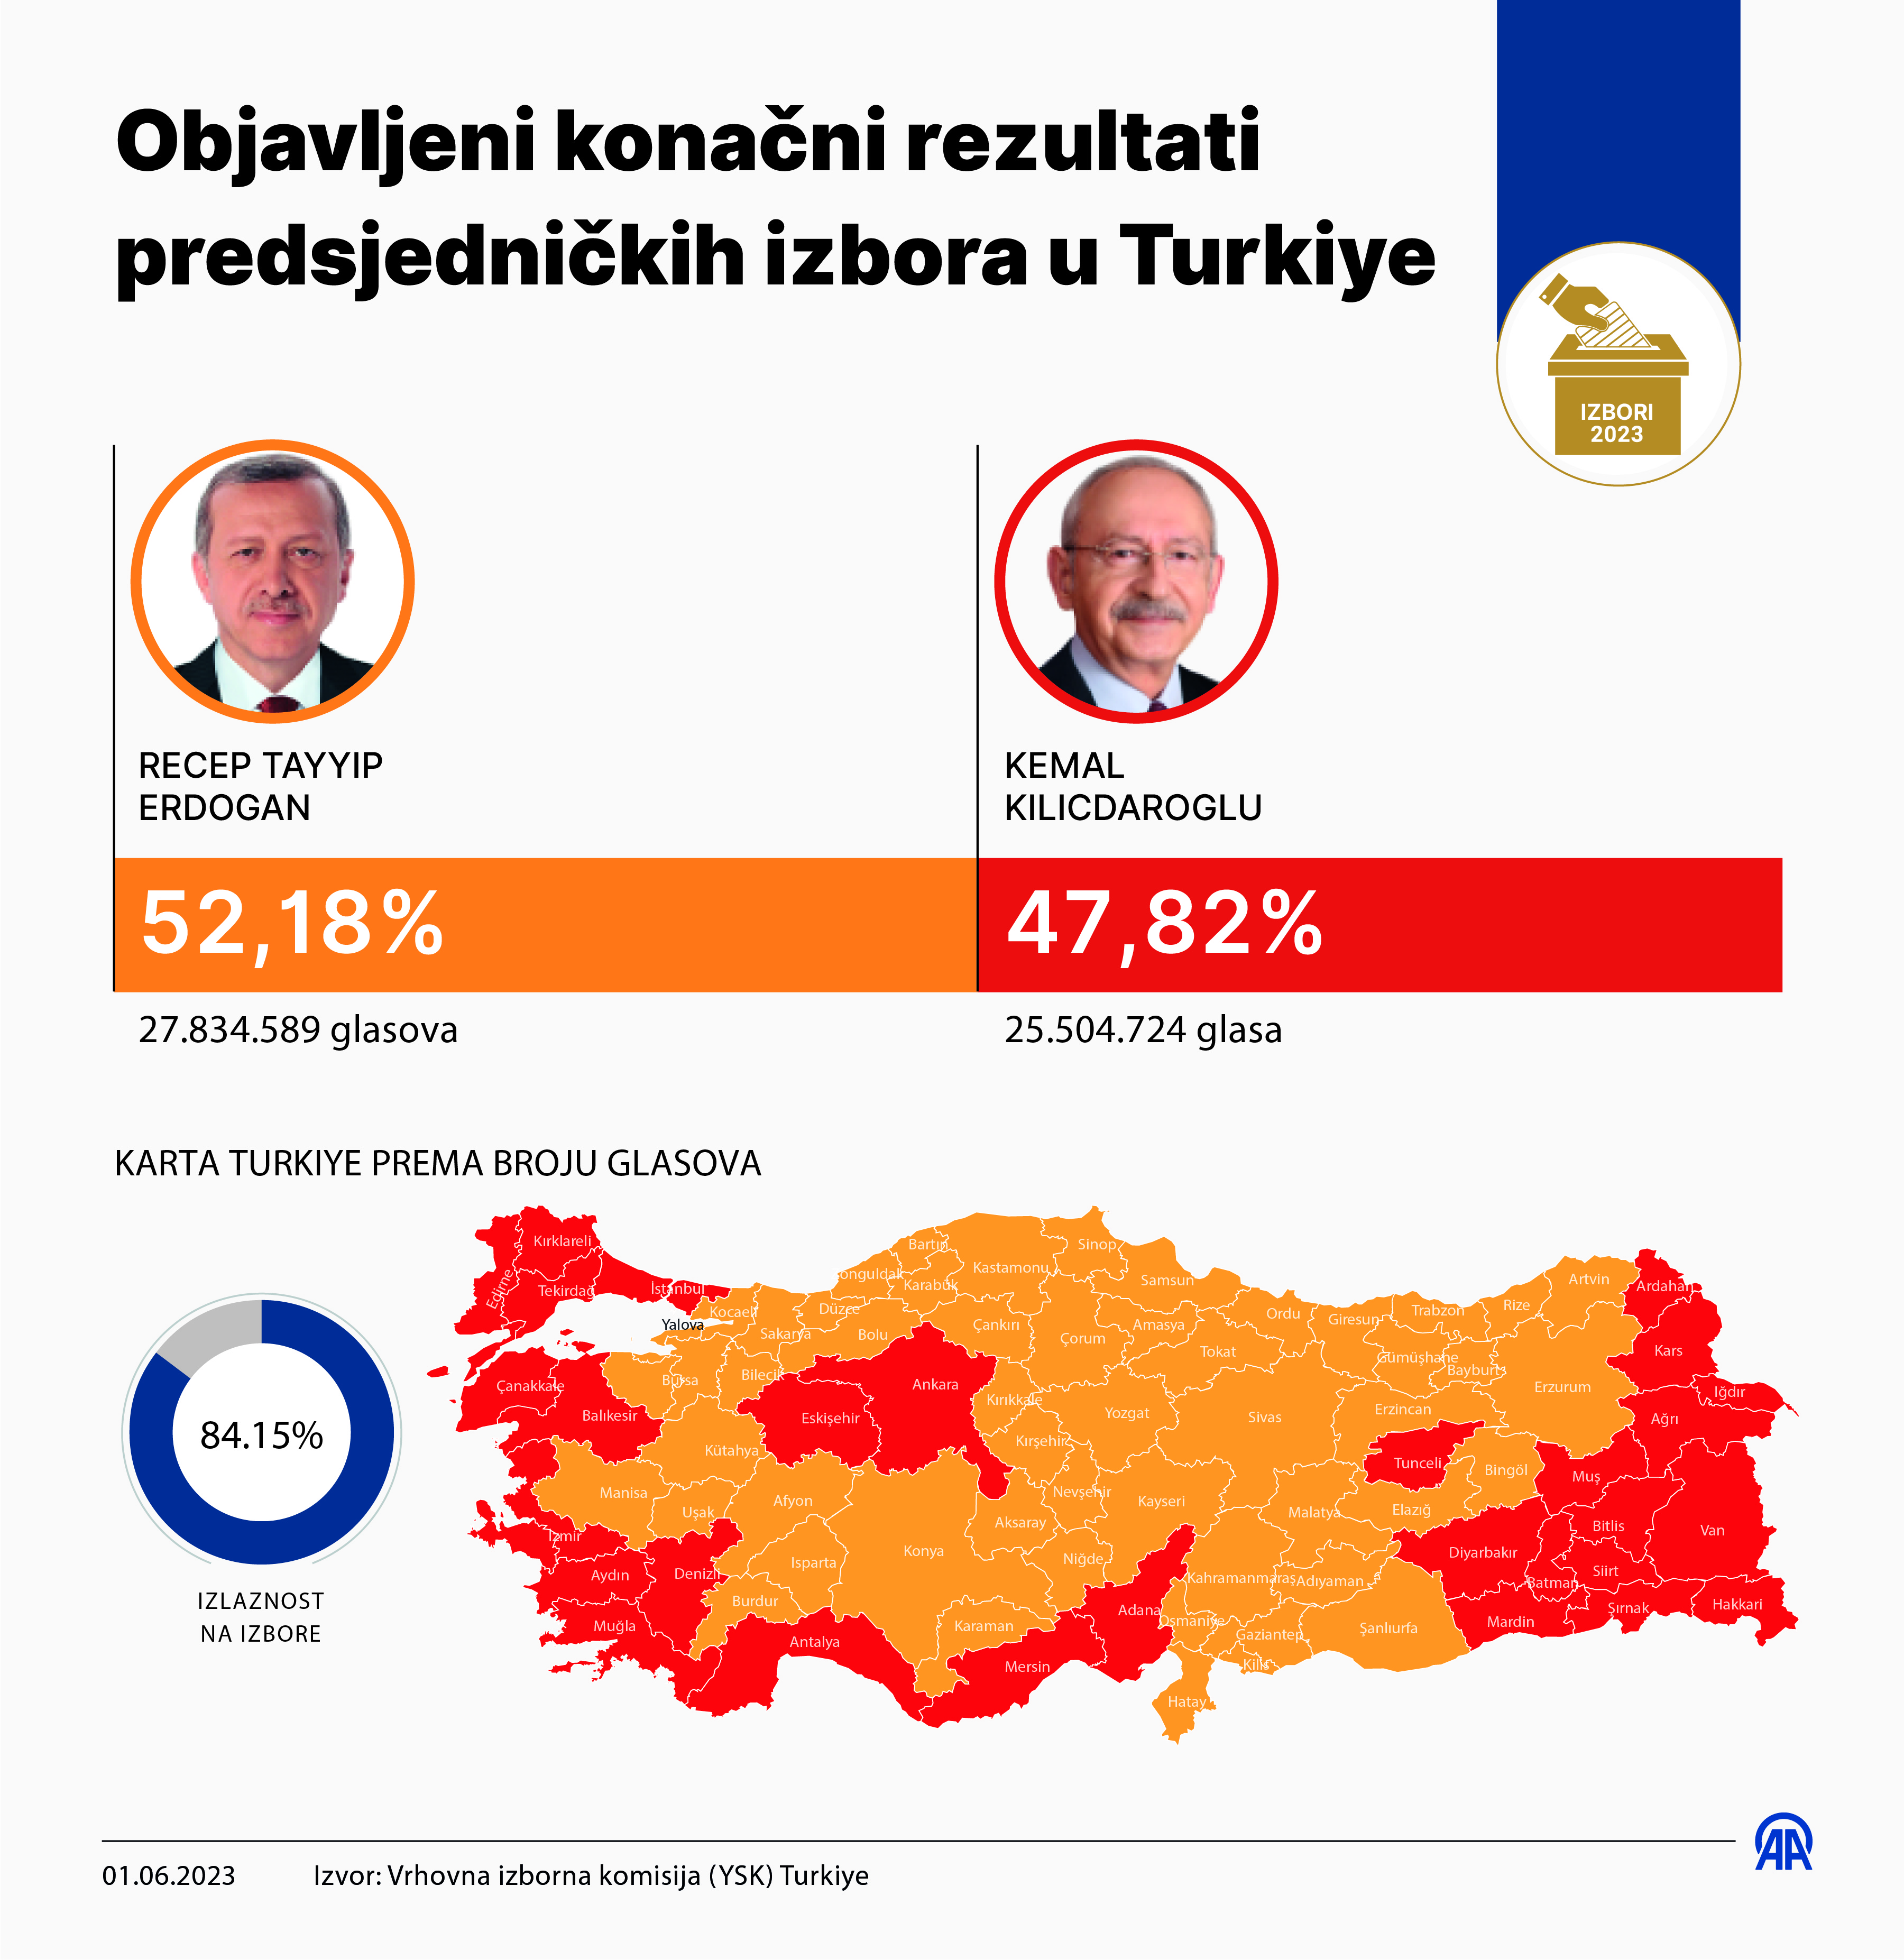 YSK objavio konačne rezultate: Erdogan osvojio 52,18 posto glasova, Kilicdaroglu 47,82